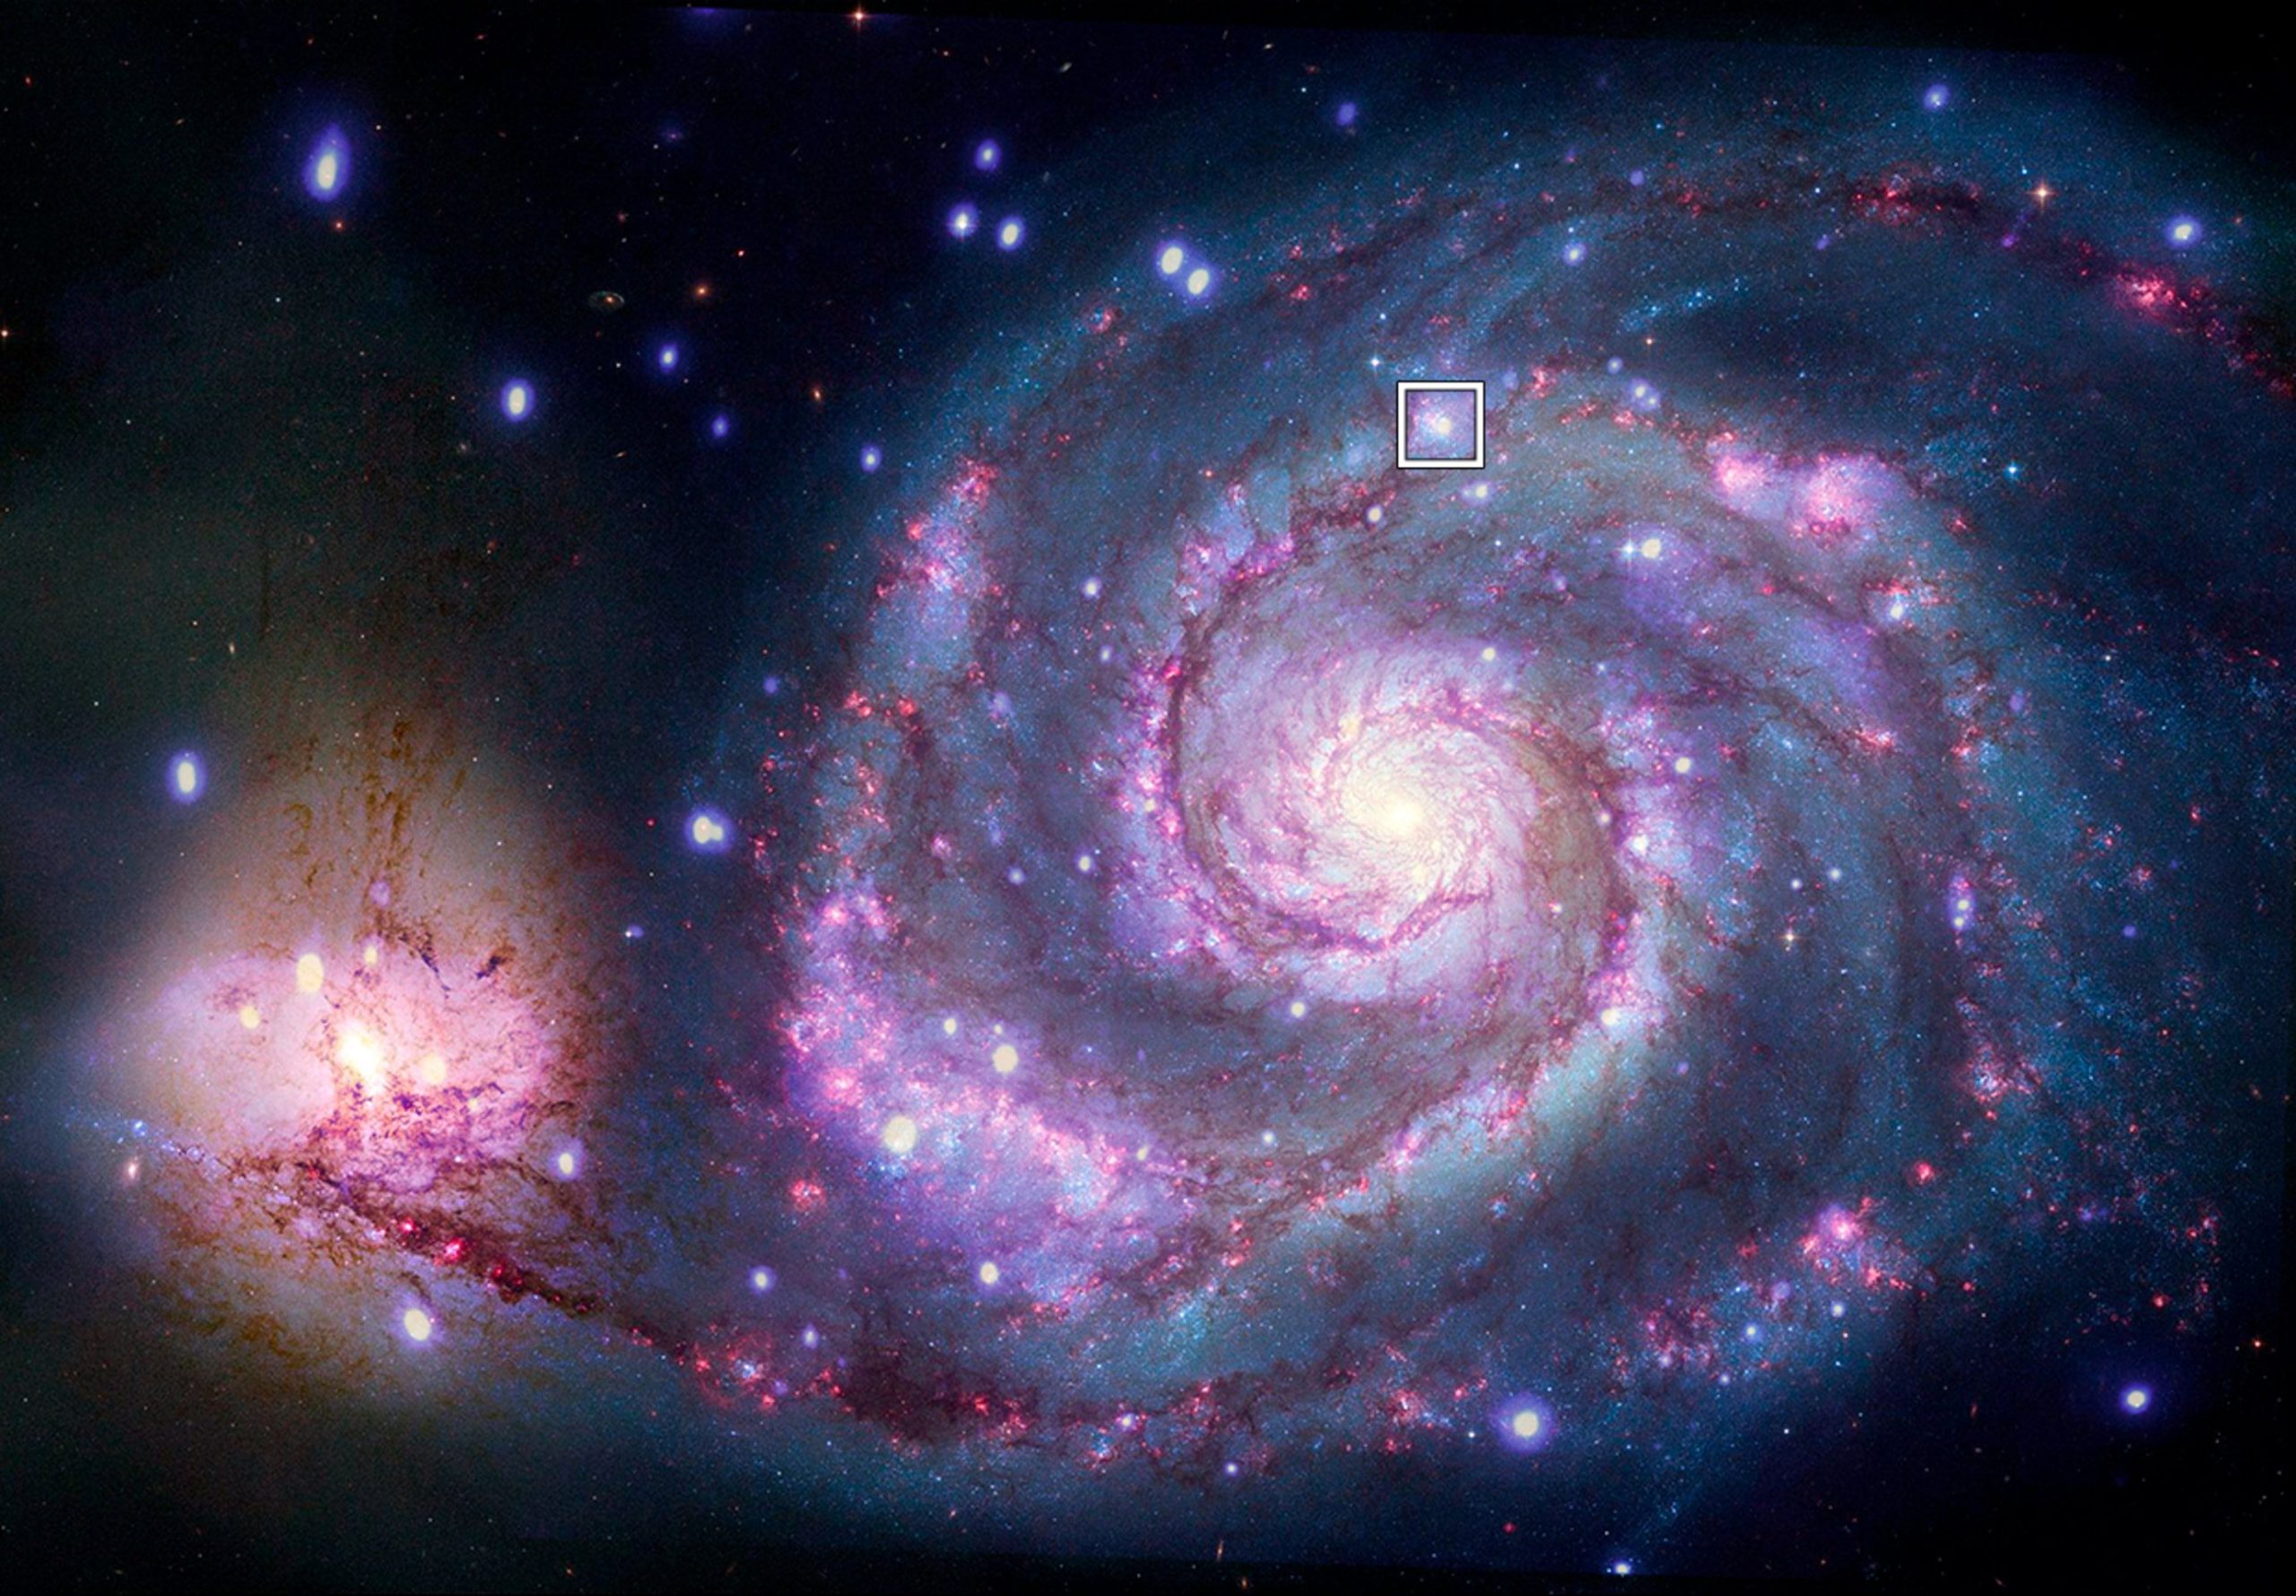 Lokacija potencijalnog planeta u M51. Izvor: X-ray: NASA/CXC/SAO/R. DiStefano, et al.; Optical: NASA/ESA/STScI/Grendler.